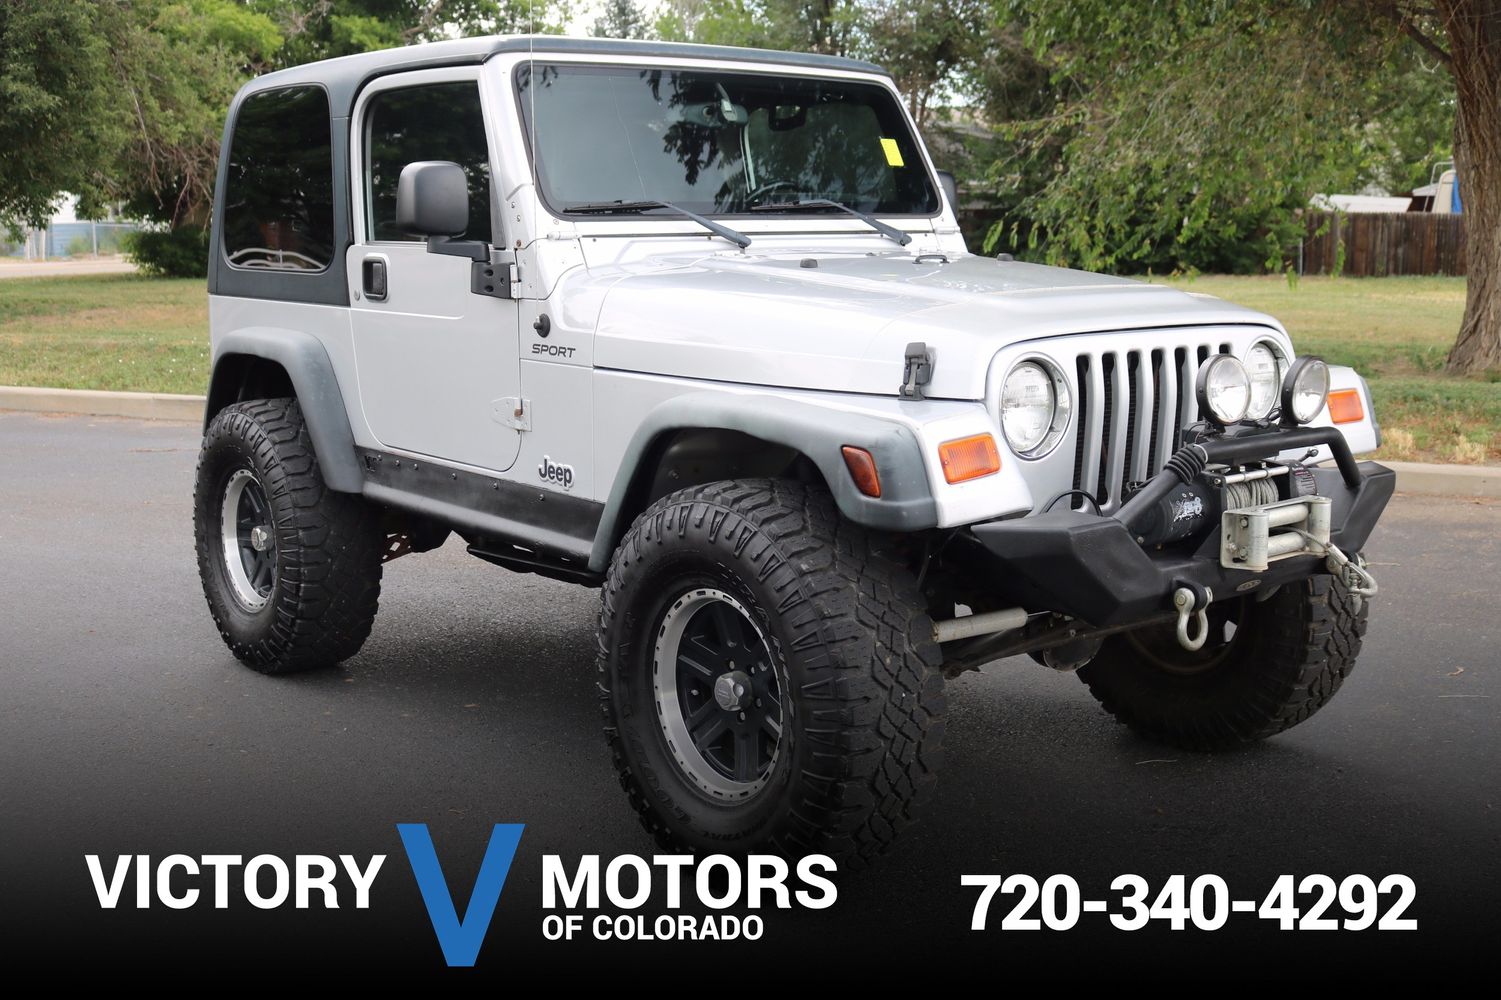 2003 Jeep Wrangler Sport | Victory Motors of Colorado